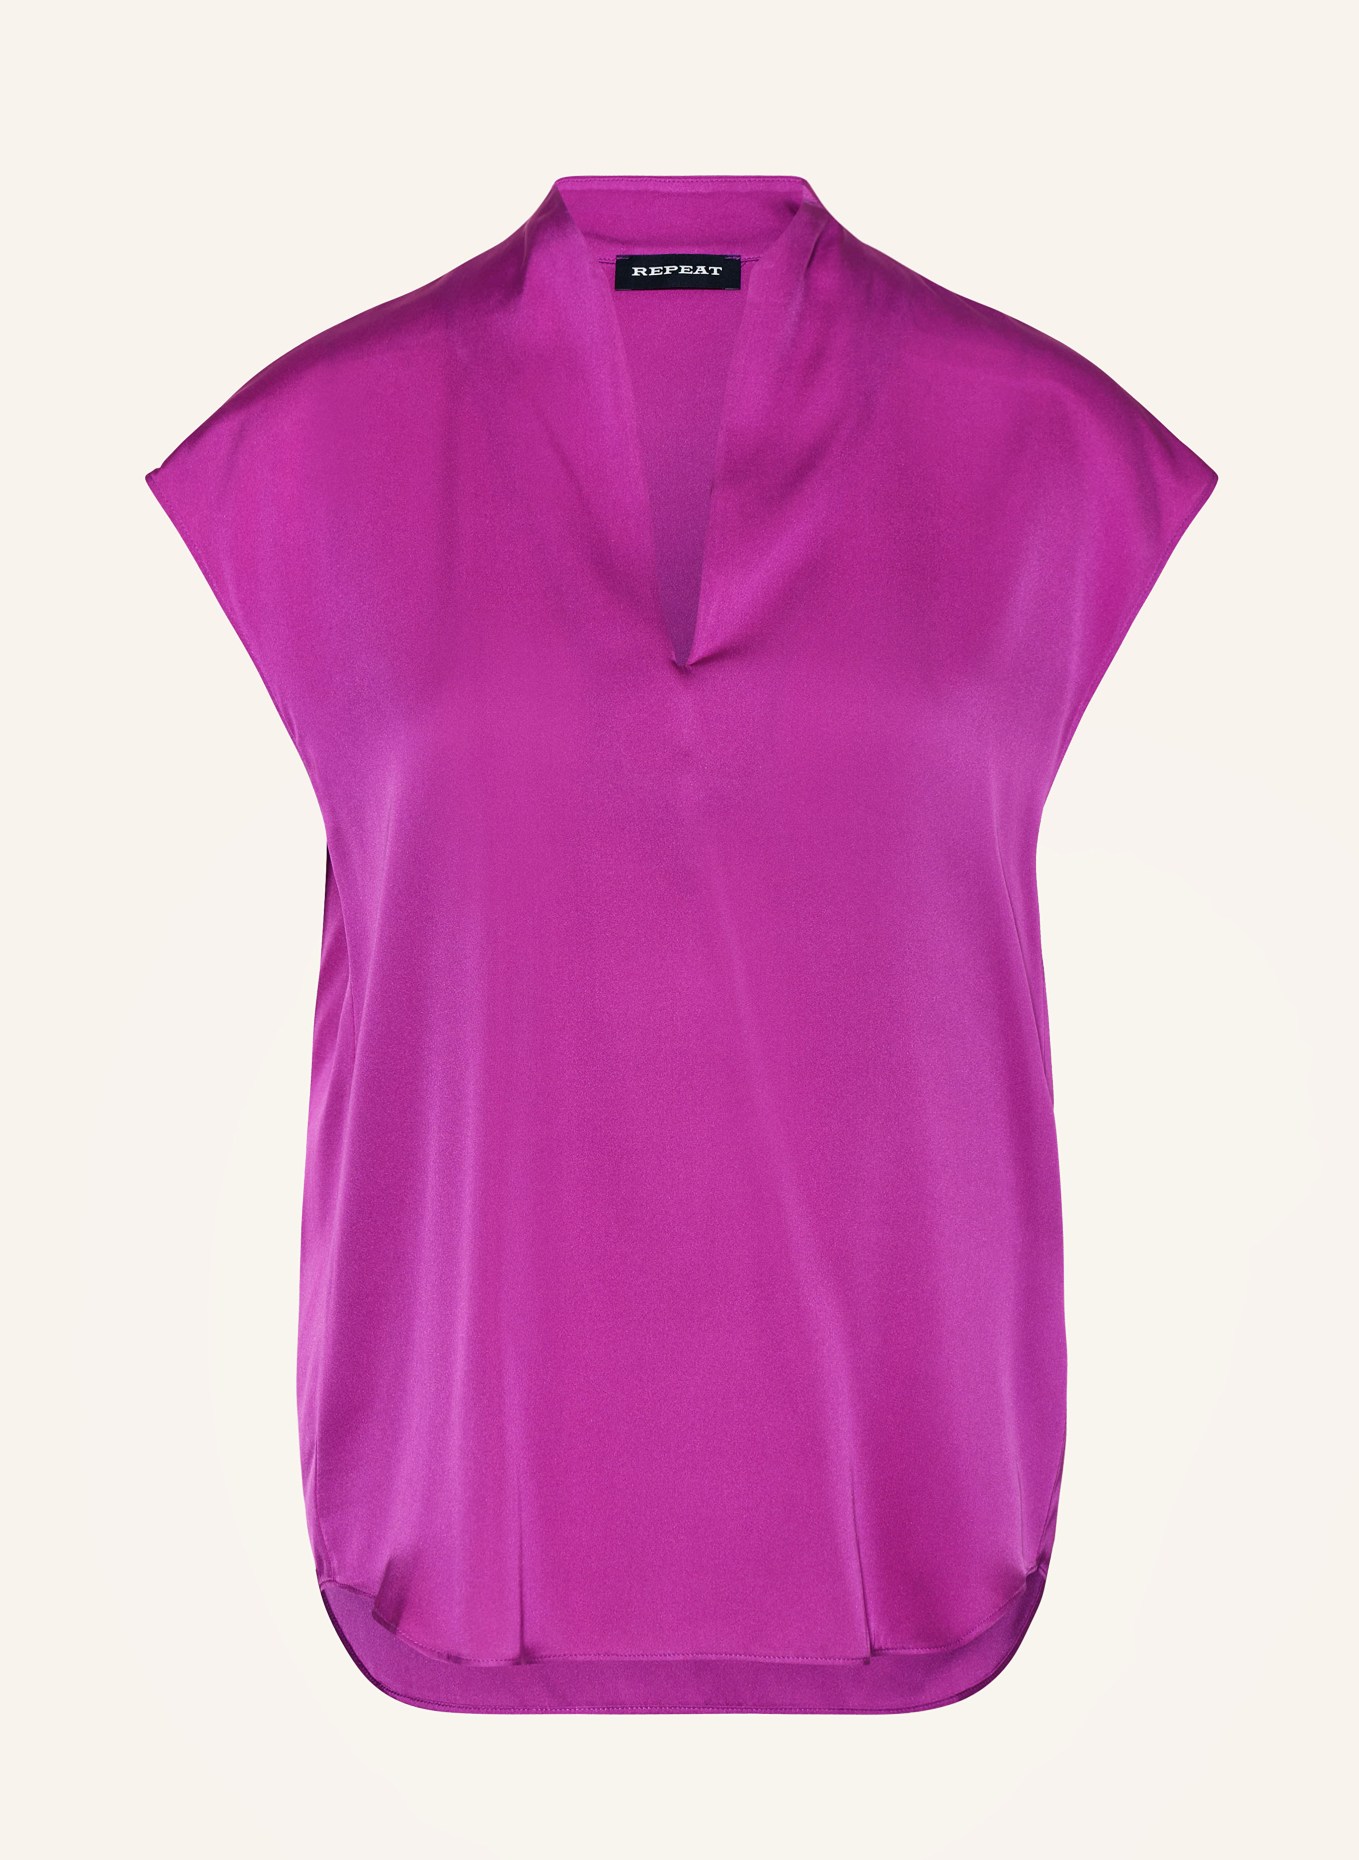 REPEAT Silk top, Color: FUCHSIA (Image 1)